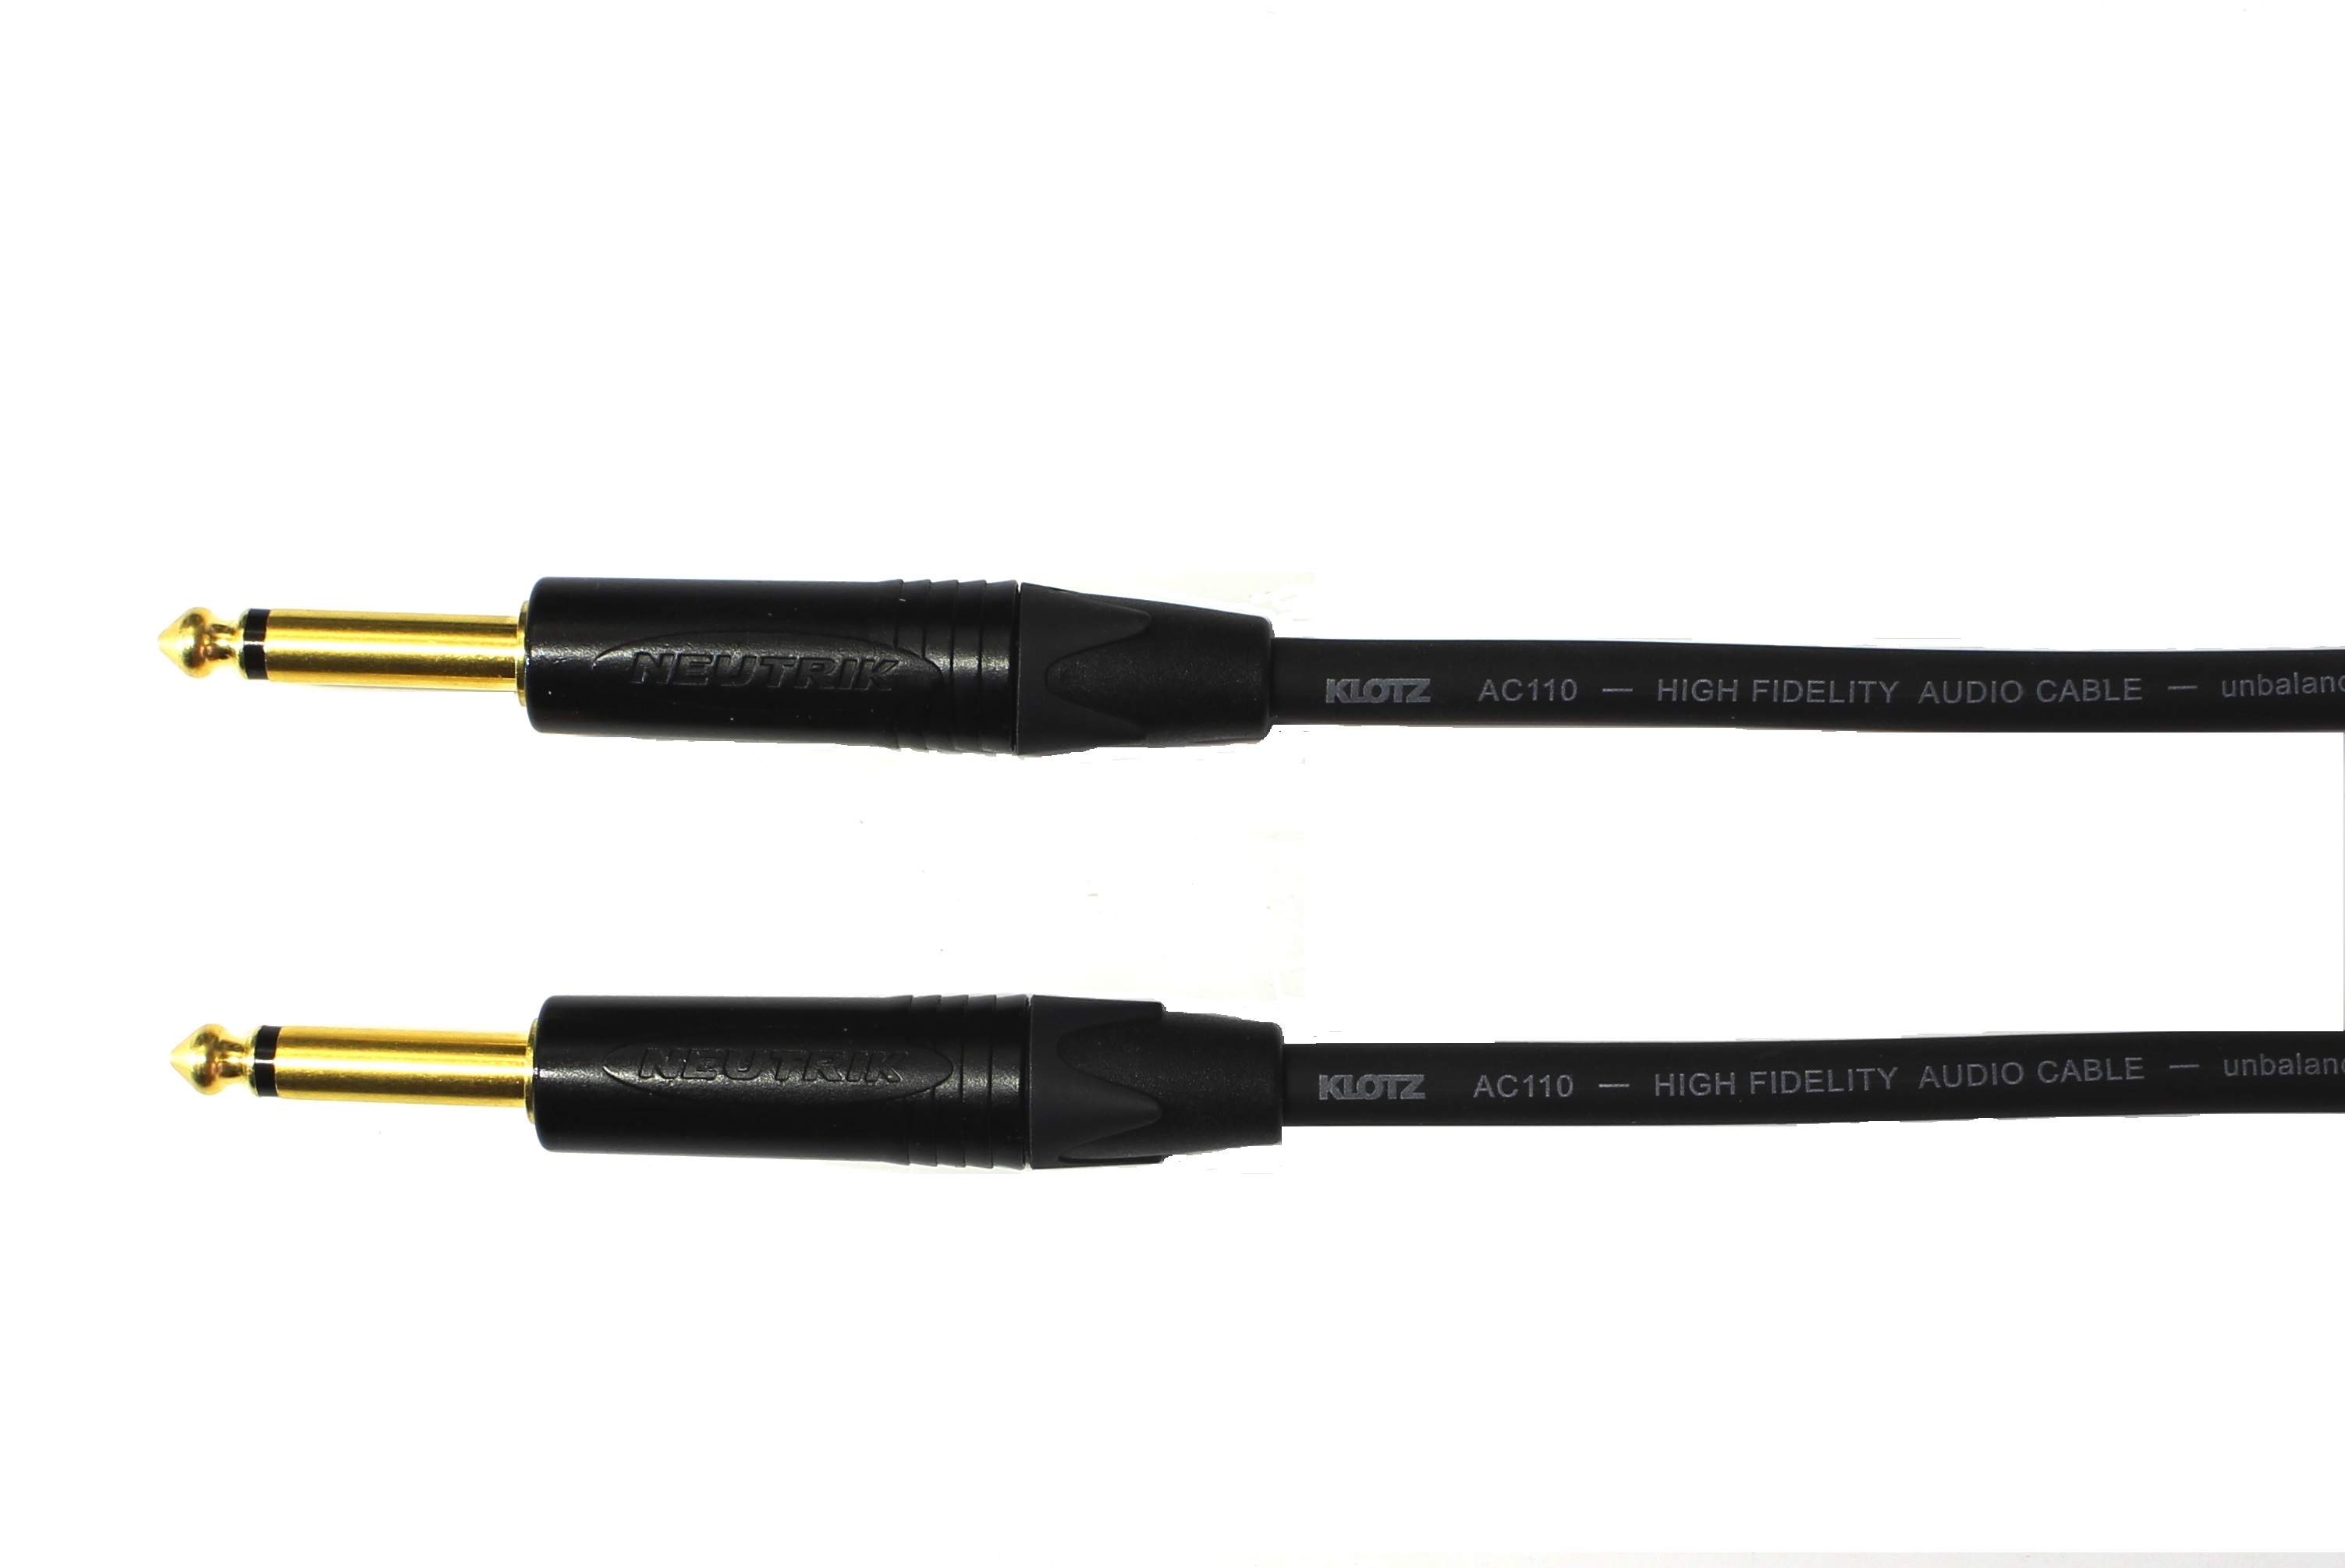 Kytarový kabel Jack 6,3 mono přímý/ Jack 6,3 mono přímý, 2 m, AC110